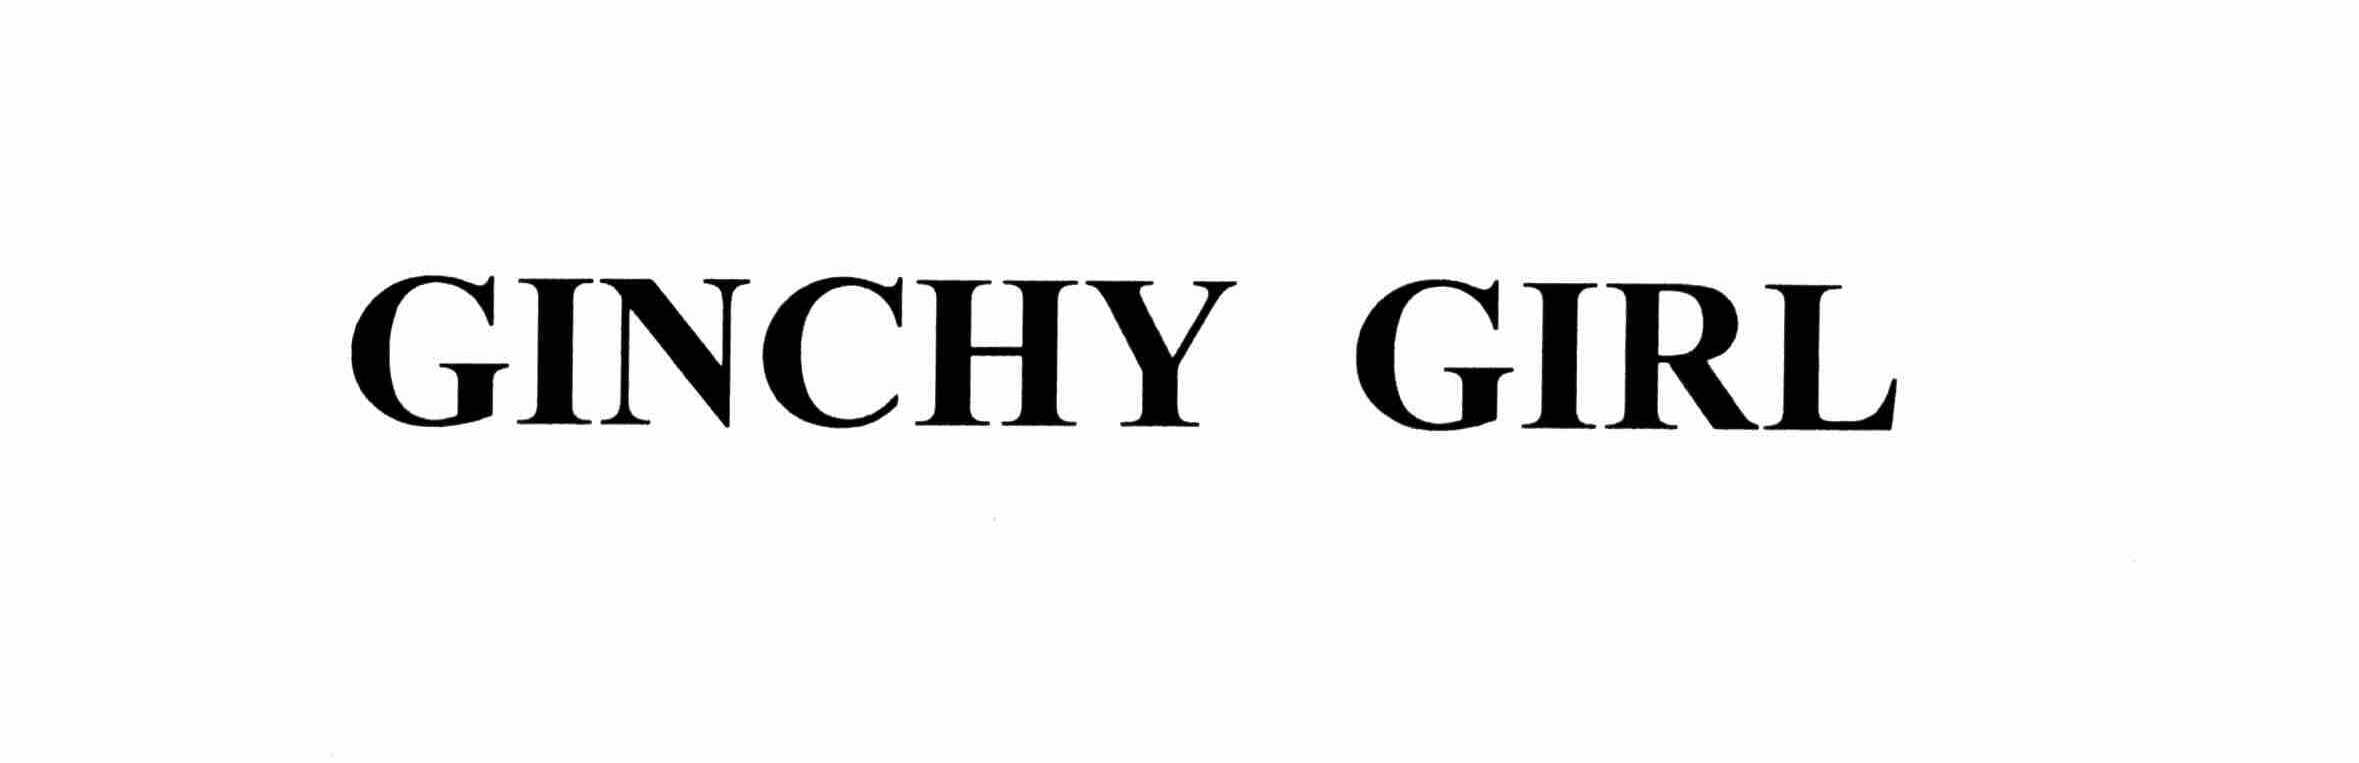  GINCHY GIRL